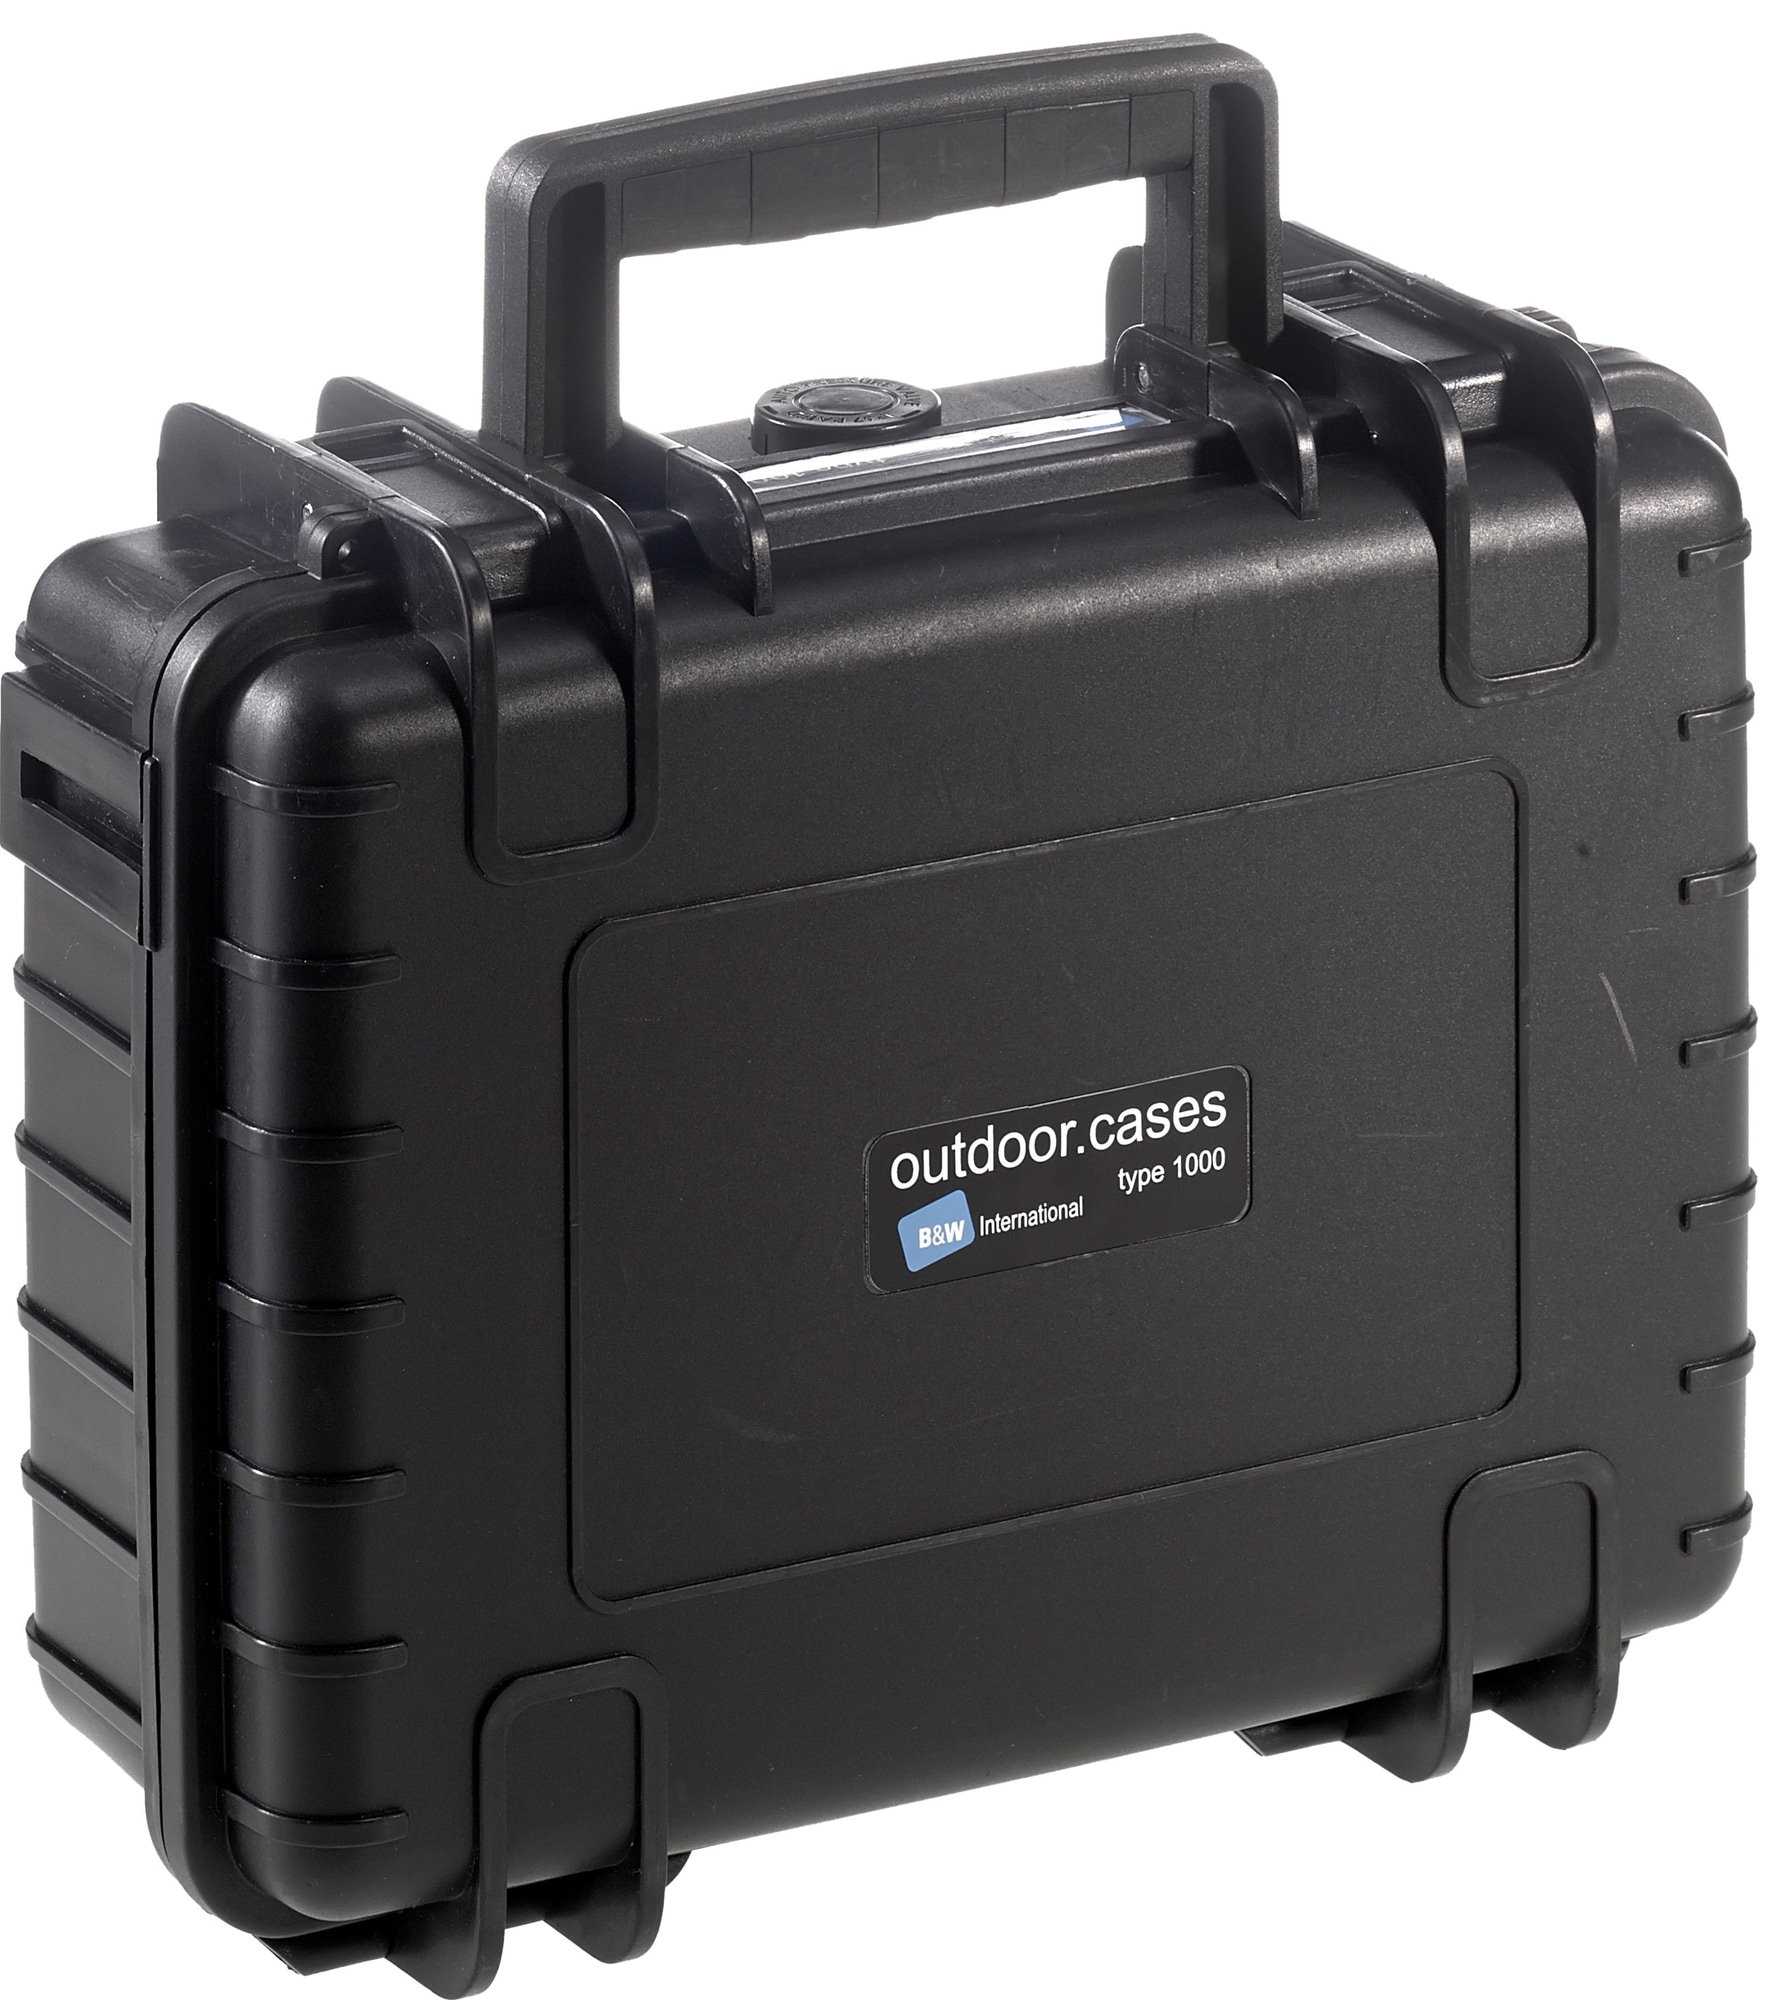 B&W Type 1000 kamera-kuffert til udendørs brug (sort) | Elgiganten